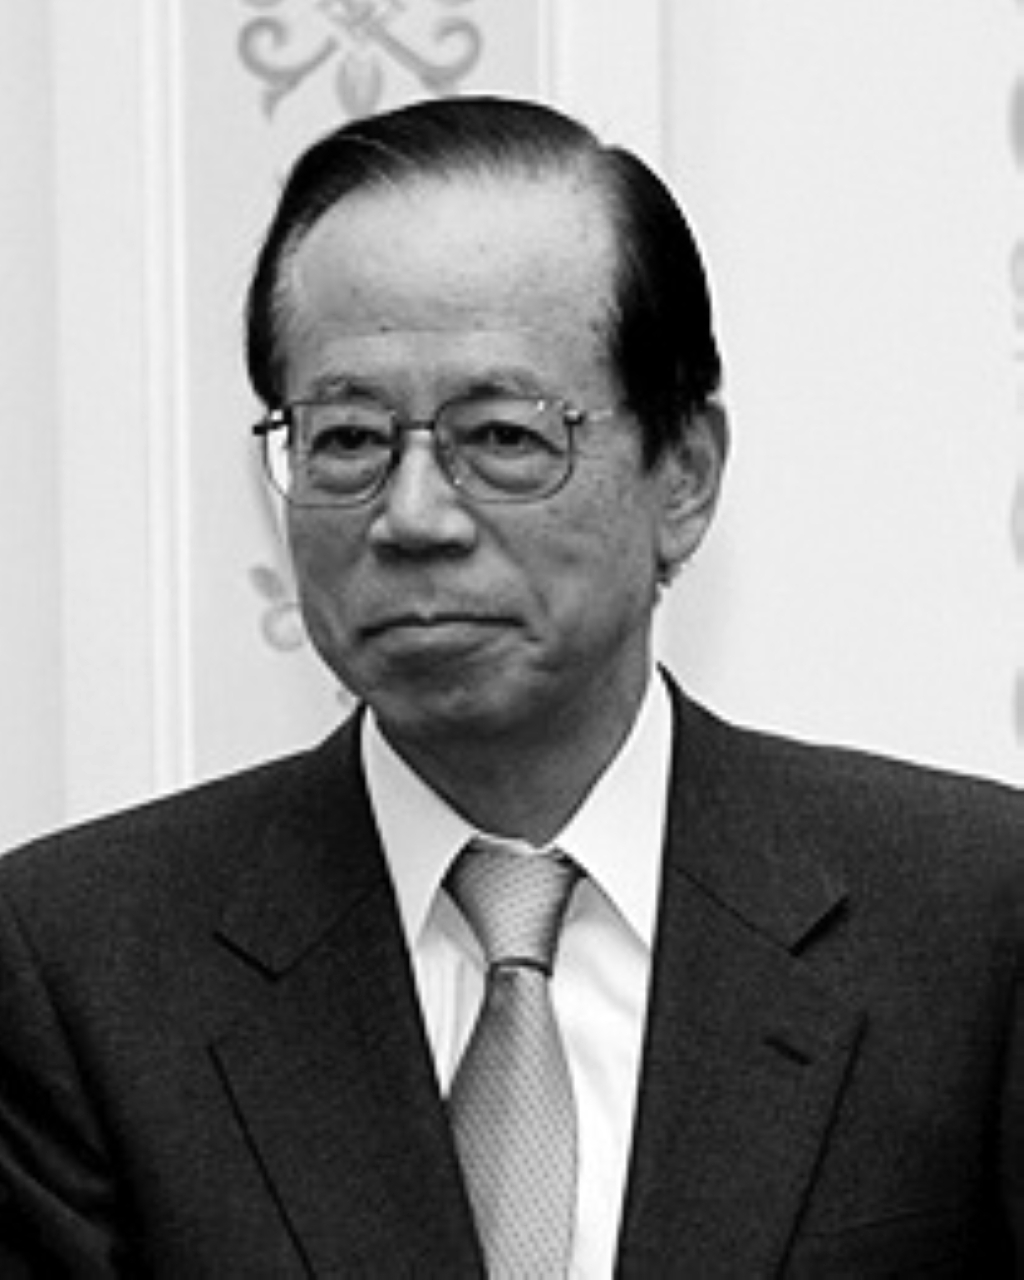 الصورة : 2007انتخاب ياسو فوكودا رئيساً للحزب الليبرالي الديمقراطي الياباني ويصبح بذلك رئيساً للوزراء.